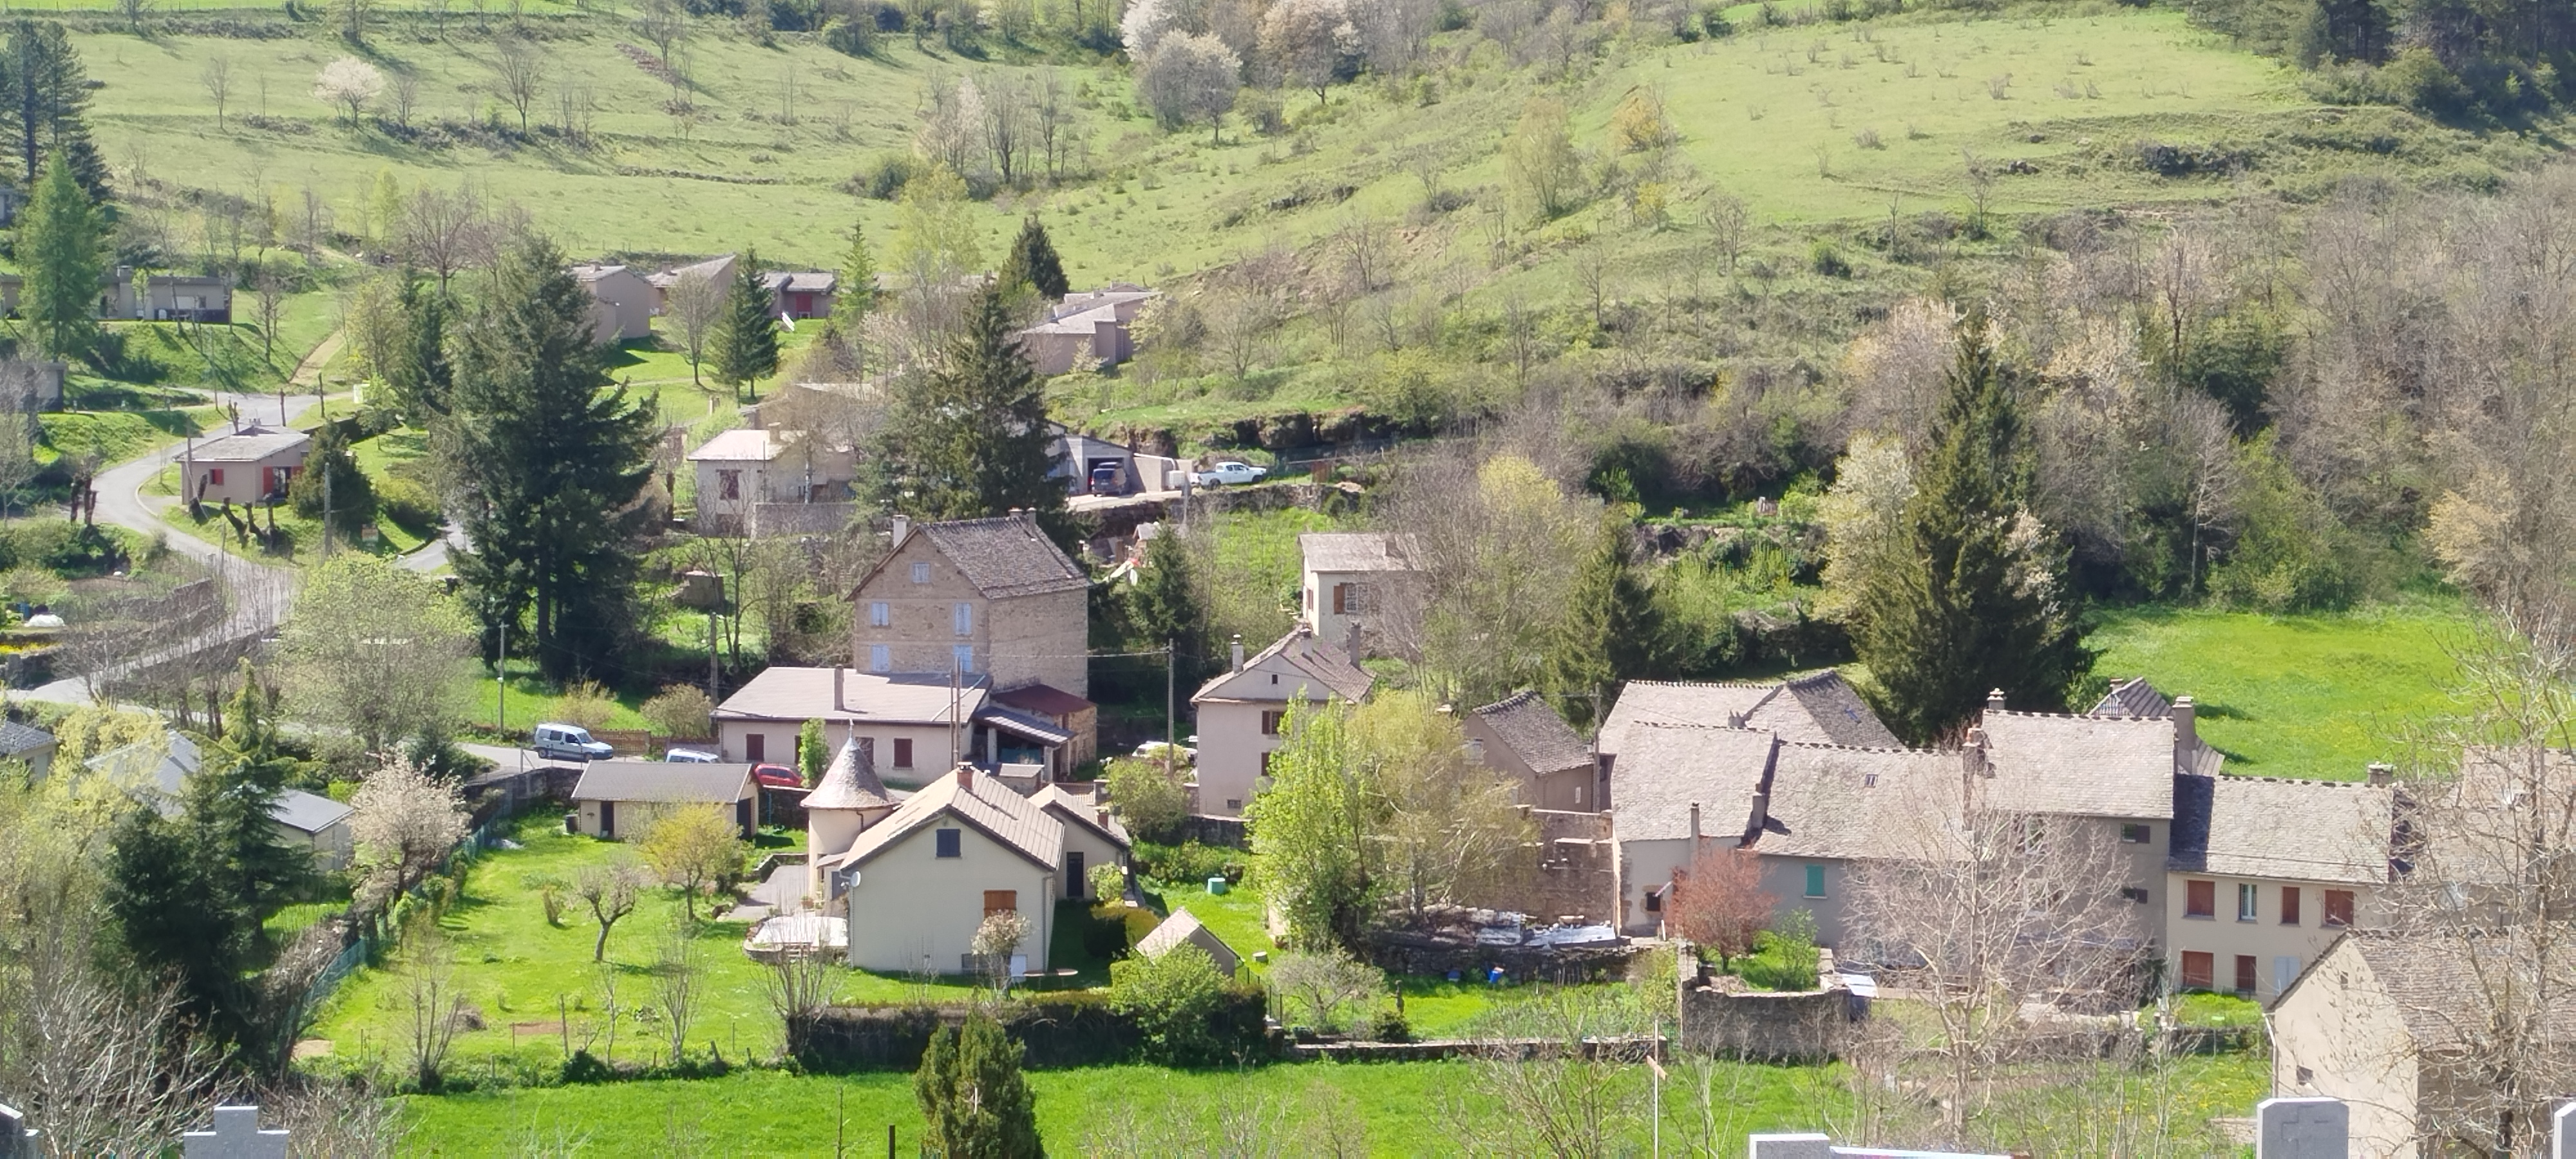 Le Bleymard - Mont Lozère et Goulet, vue sur une partie du village, la route du Mont Lozère vue de la colline d'en face.